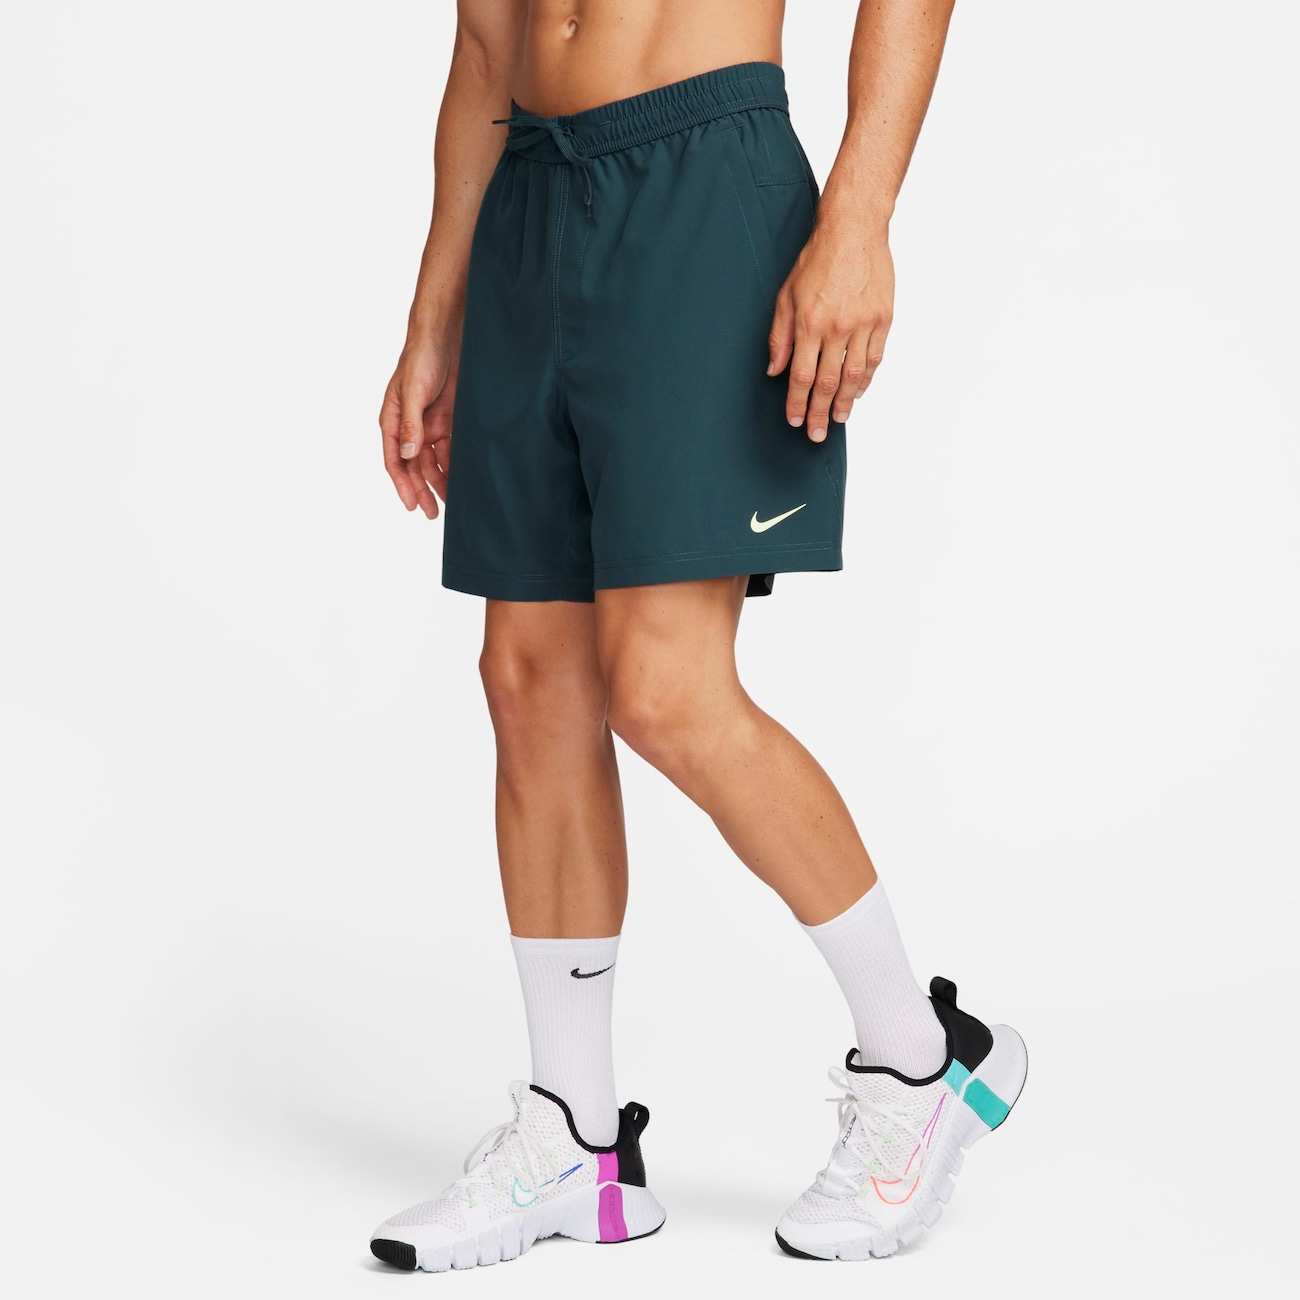 Alsidige Nike Form Dri-FIT-shorts (18 cm) uden for til mænd - grøn